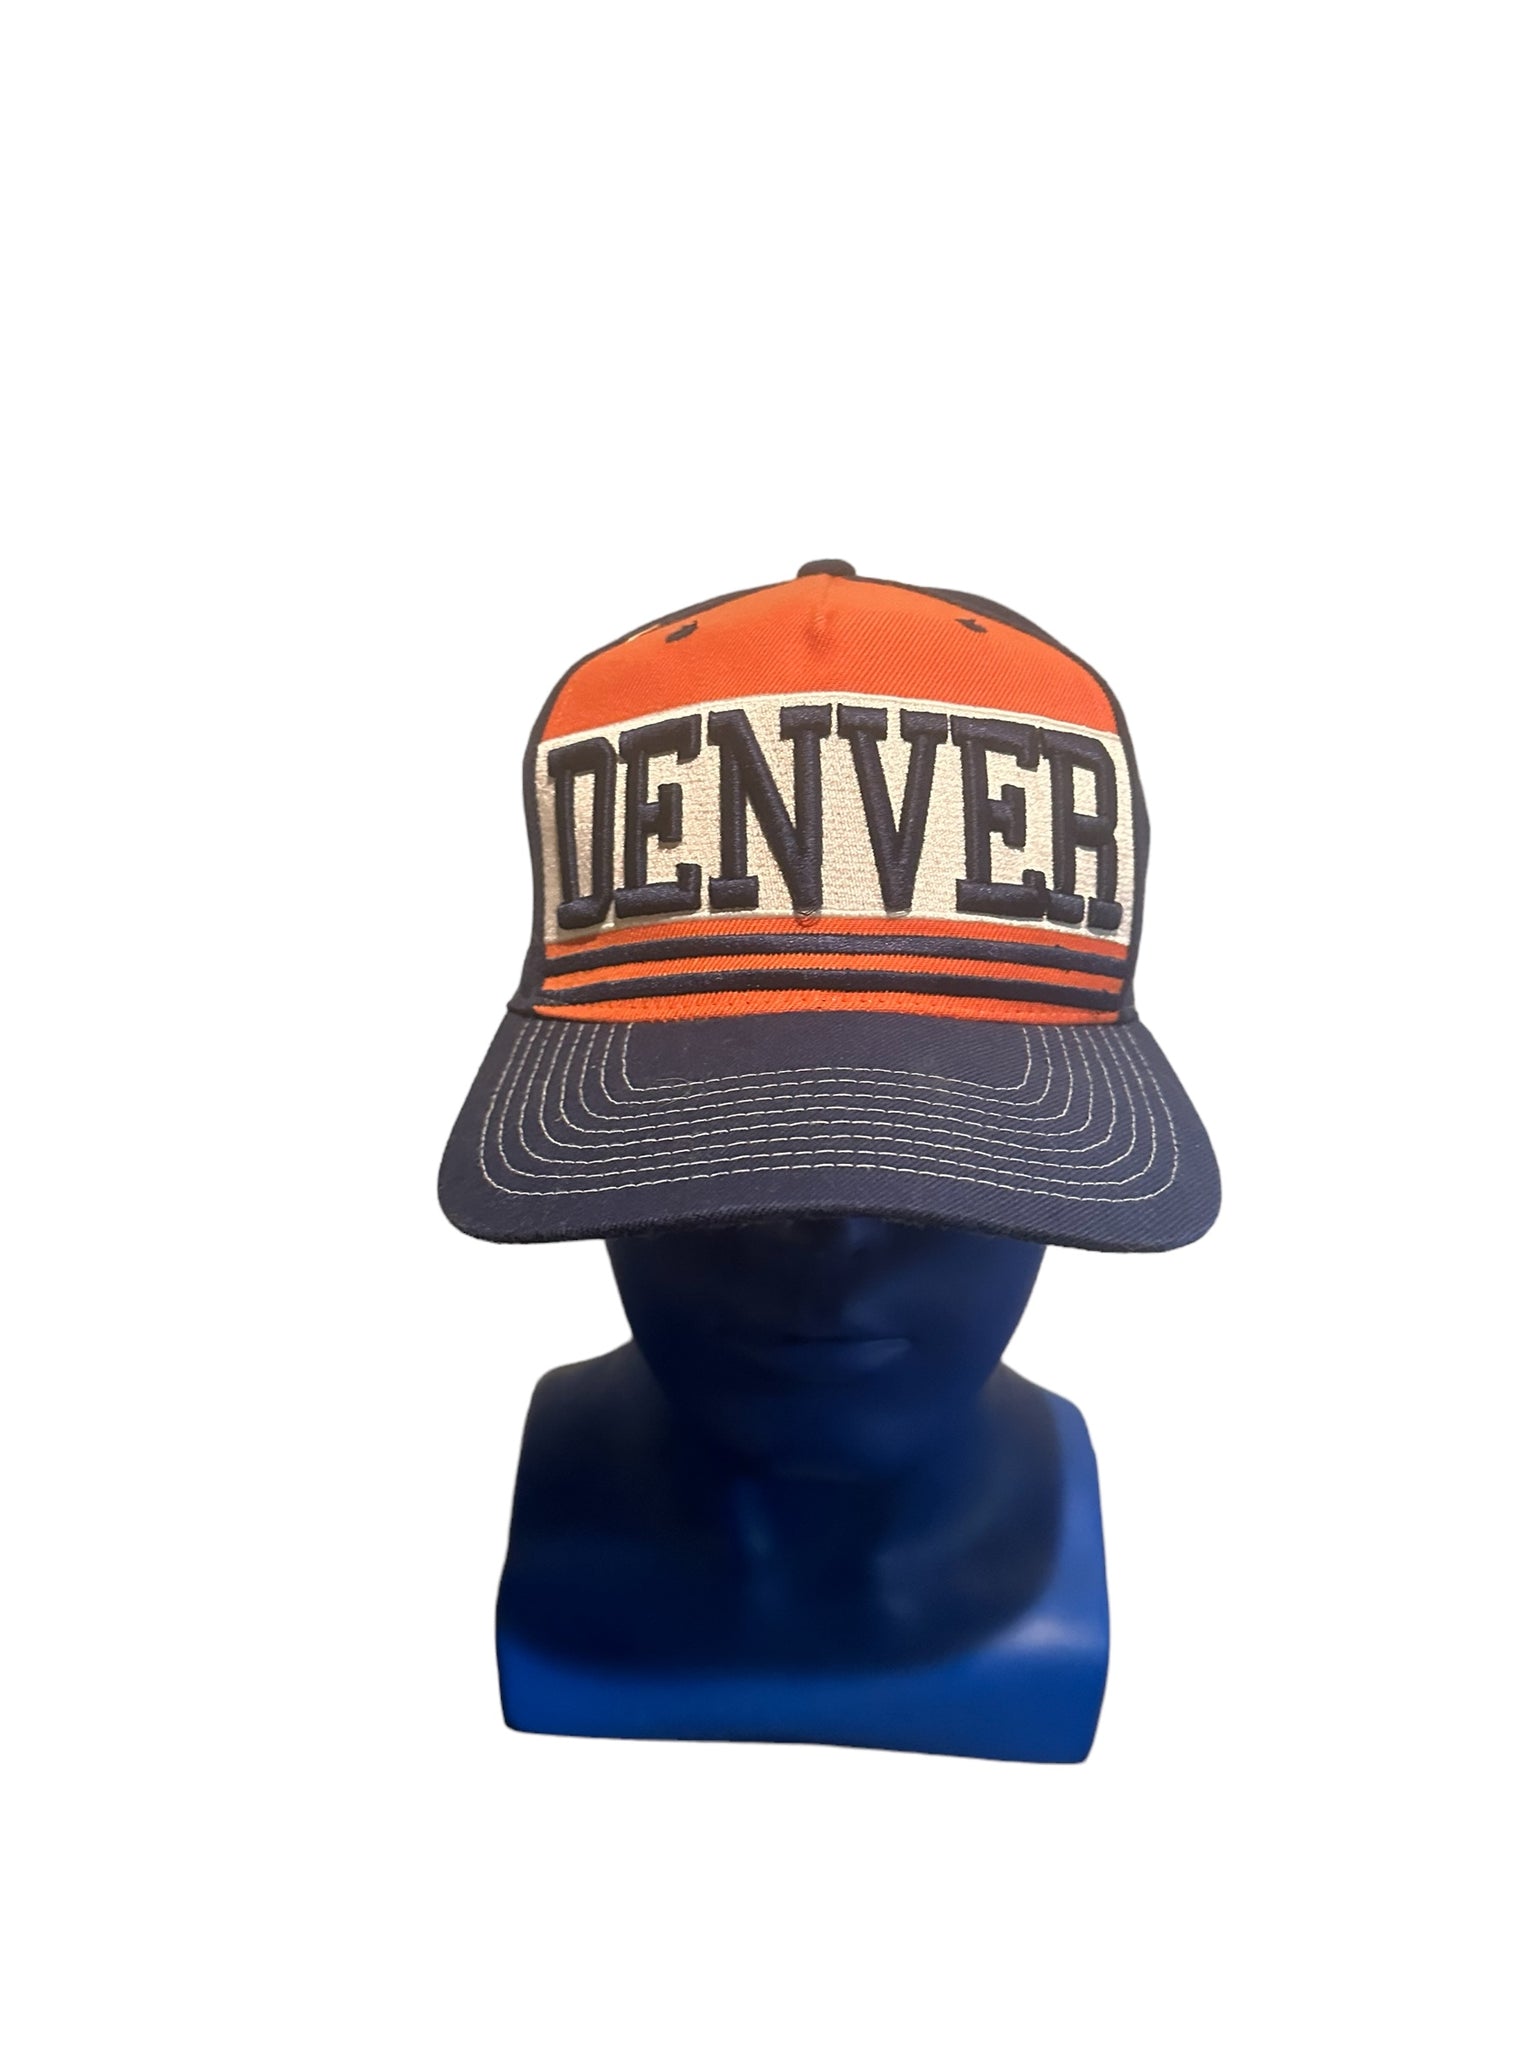 zephyr hats denver embroidered orange and blue snapback hat